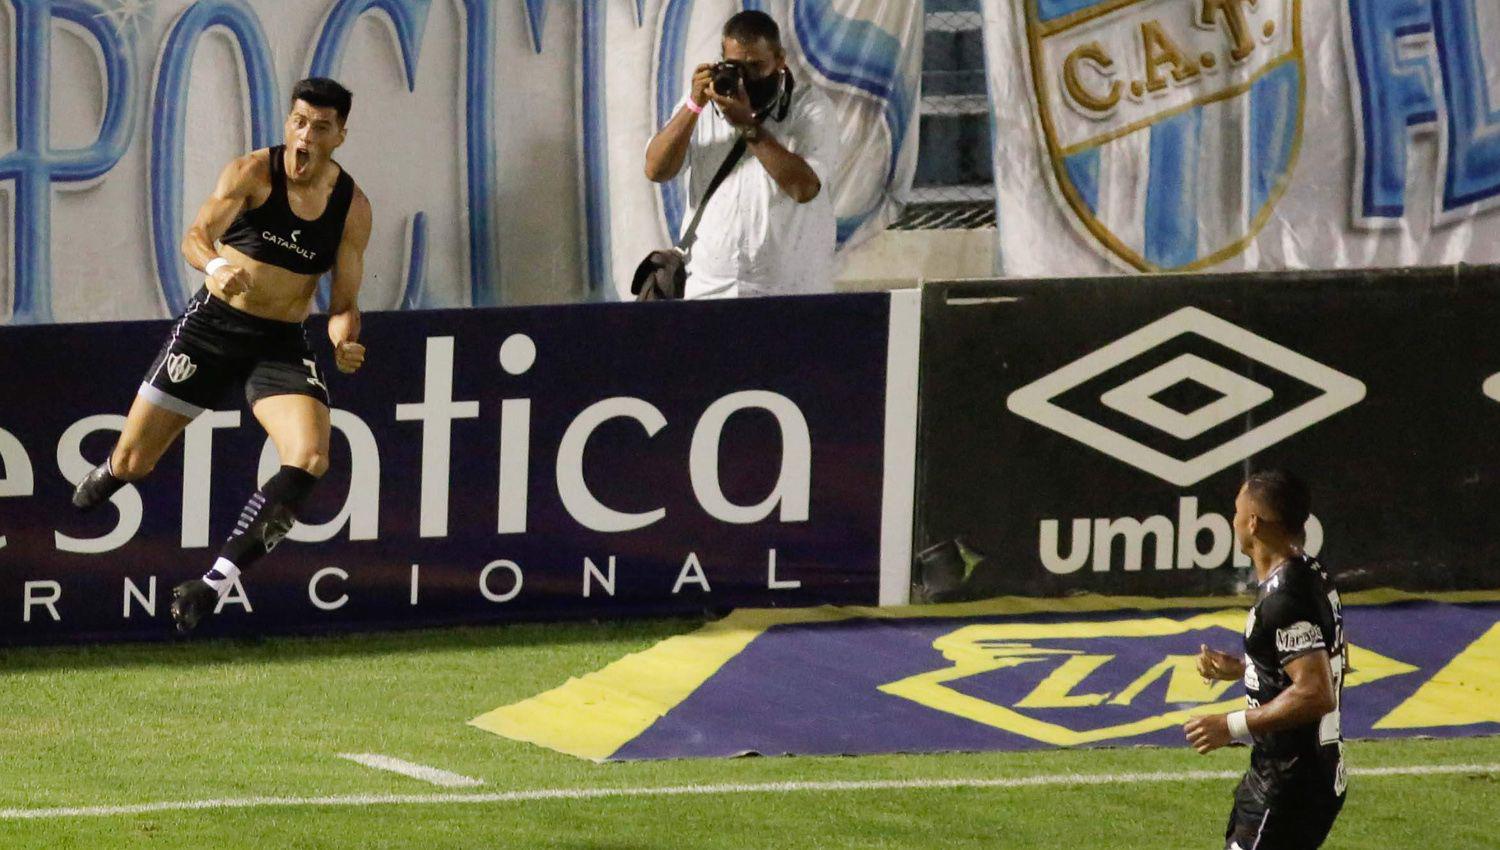 Sequeira en su vuelta a Central Córdoba tras cuatro años en Belgrano anotó el agónico gol del triunfo ante Atlético Tucum�n Milton Giménez (abajo) también debutó con gol